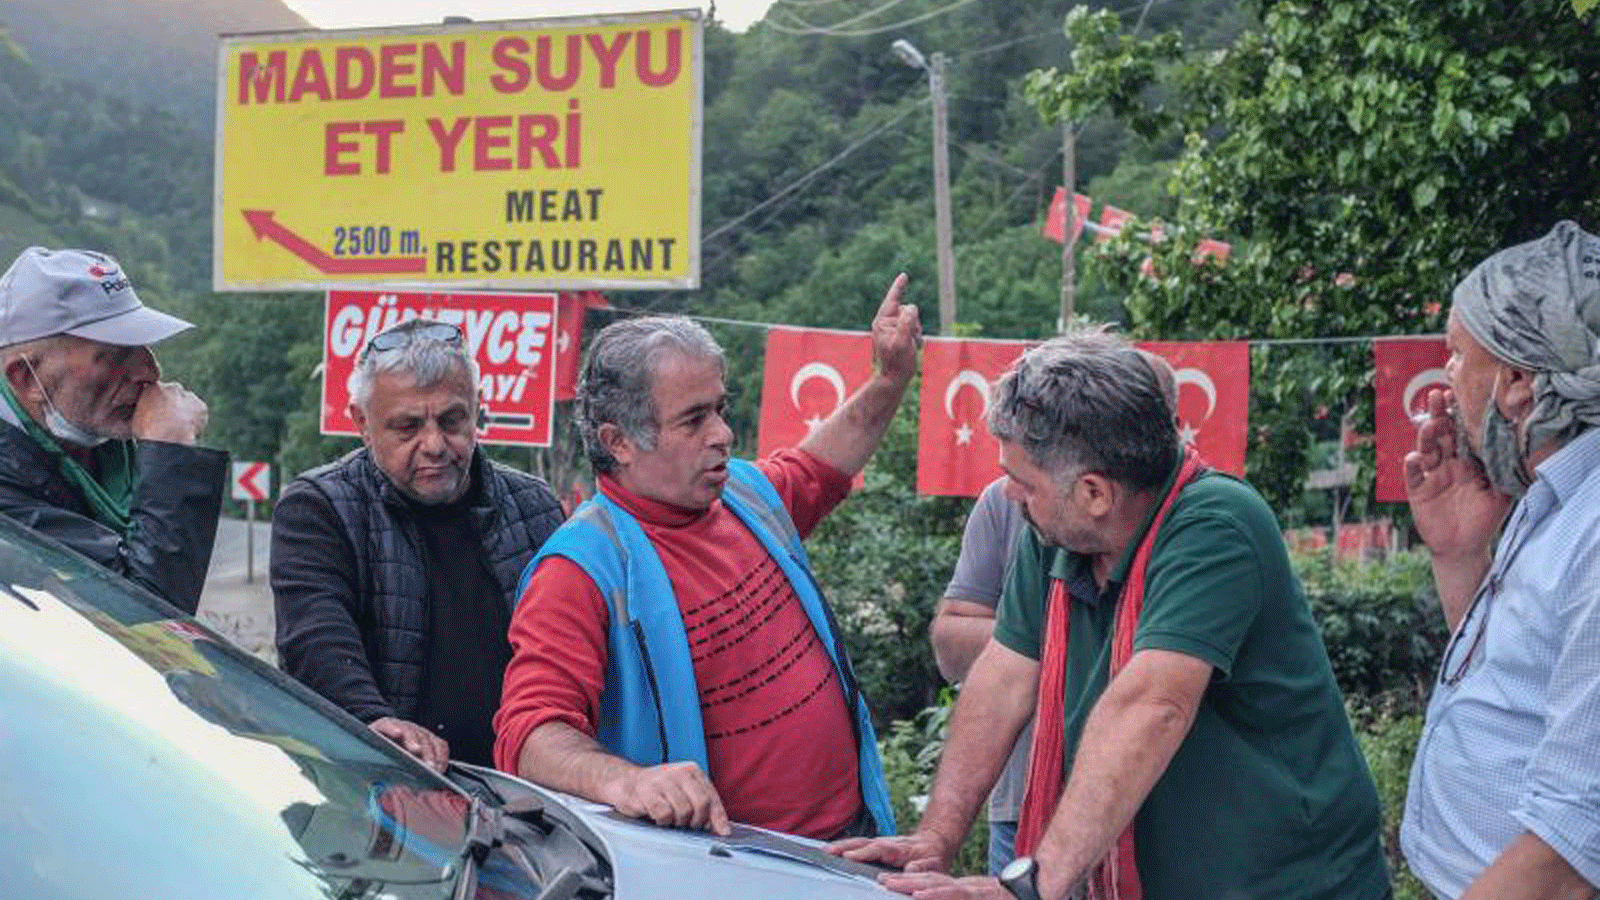 قرويون يتجادلون مع رئيس موقع عمل محجر في إيكيزدير في مقاطعة ريزي في منطقة البحر الأسود في تركيا.